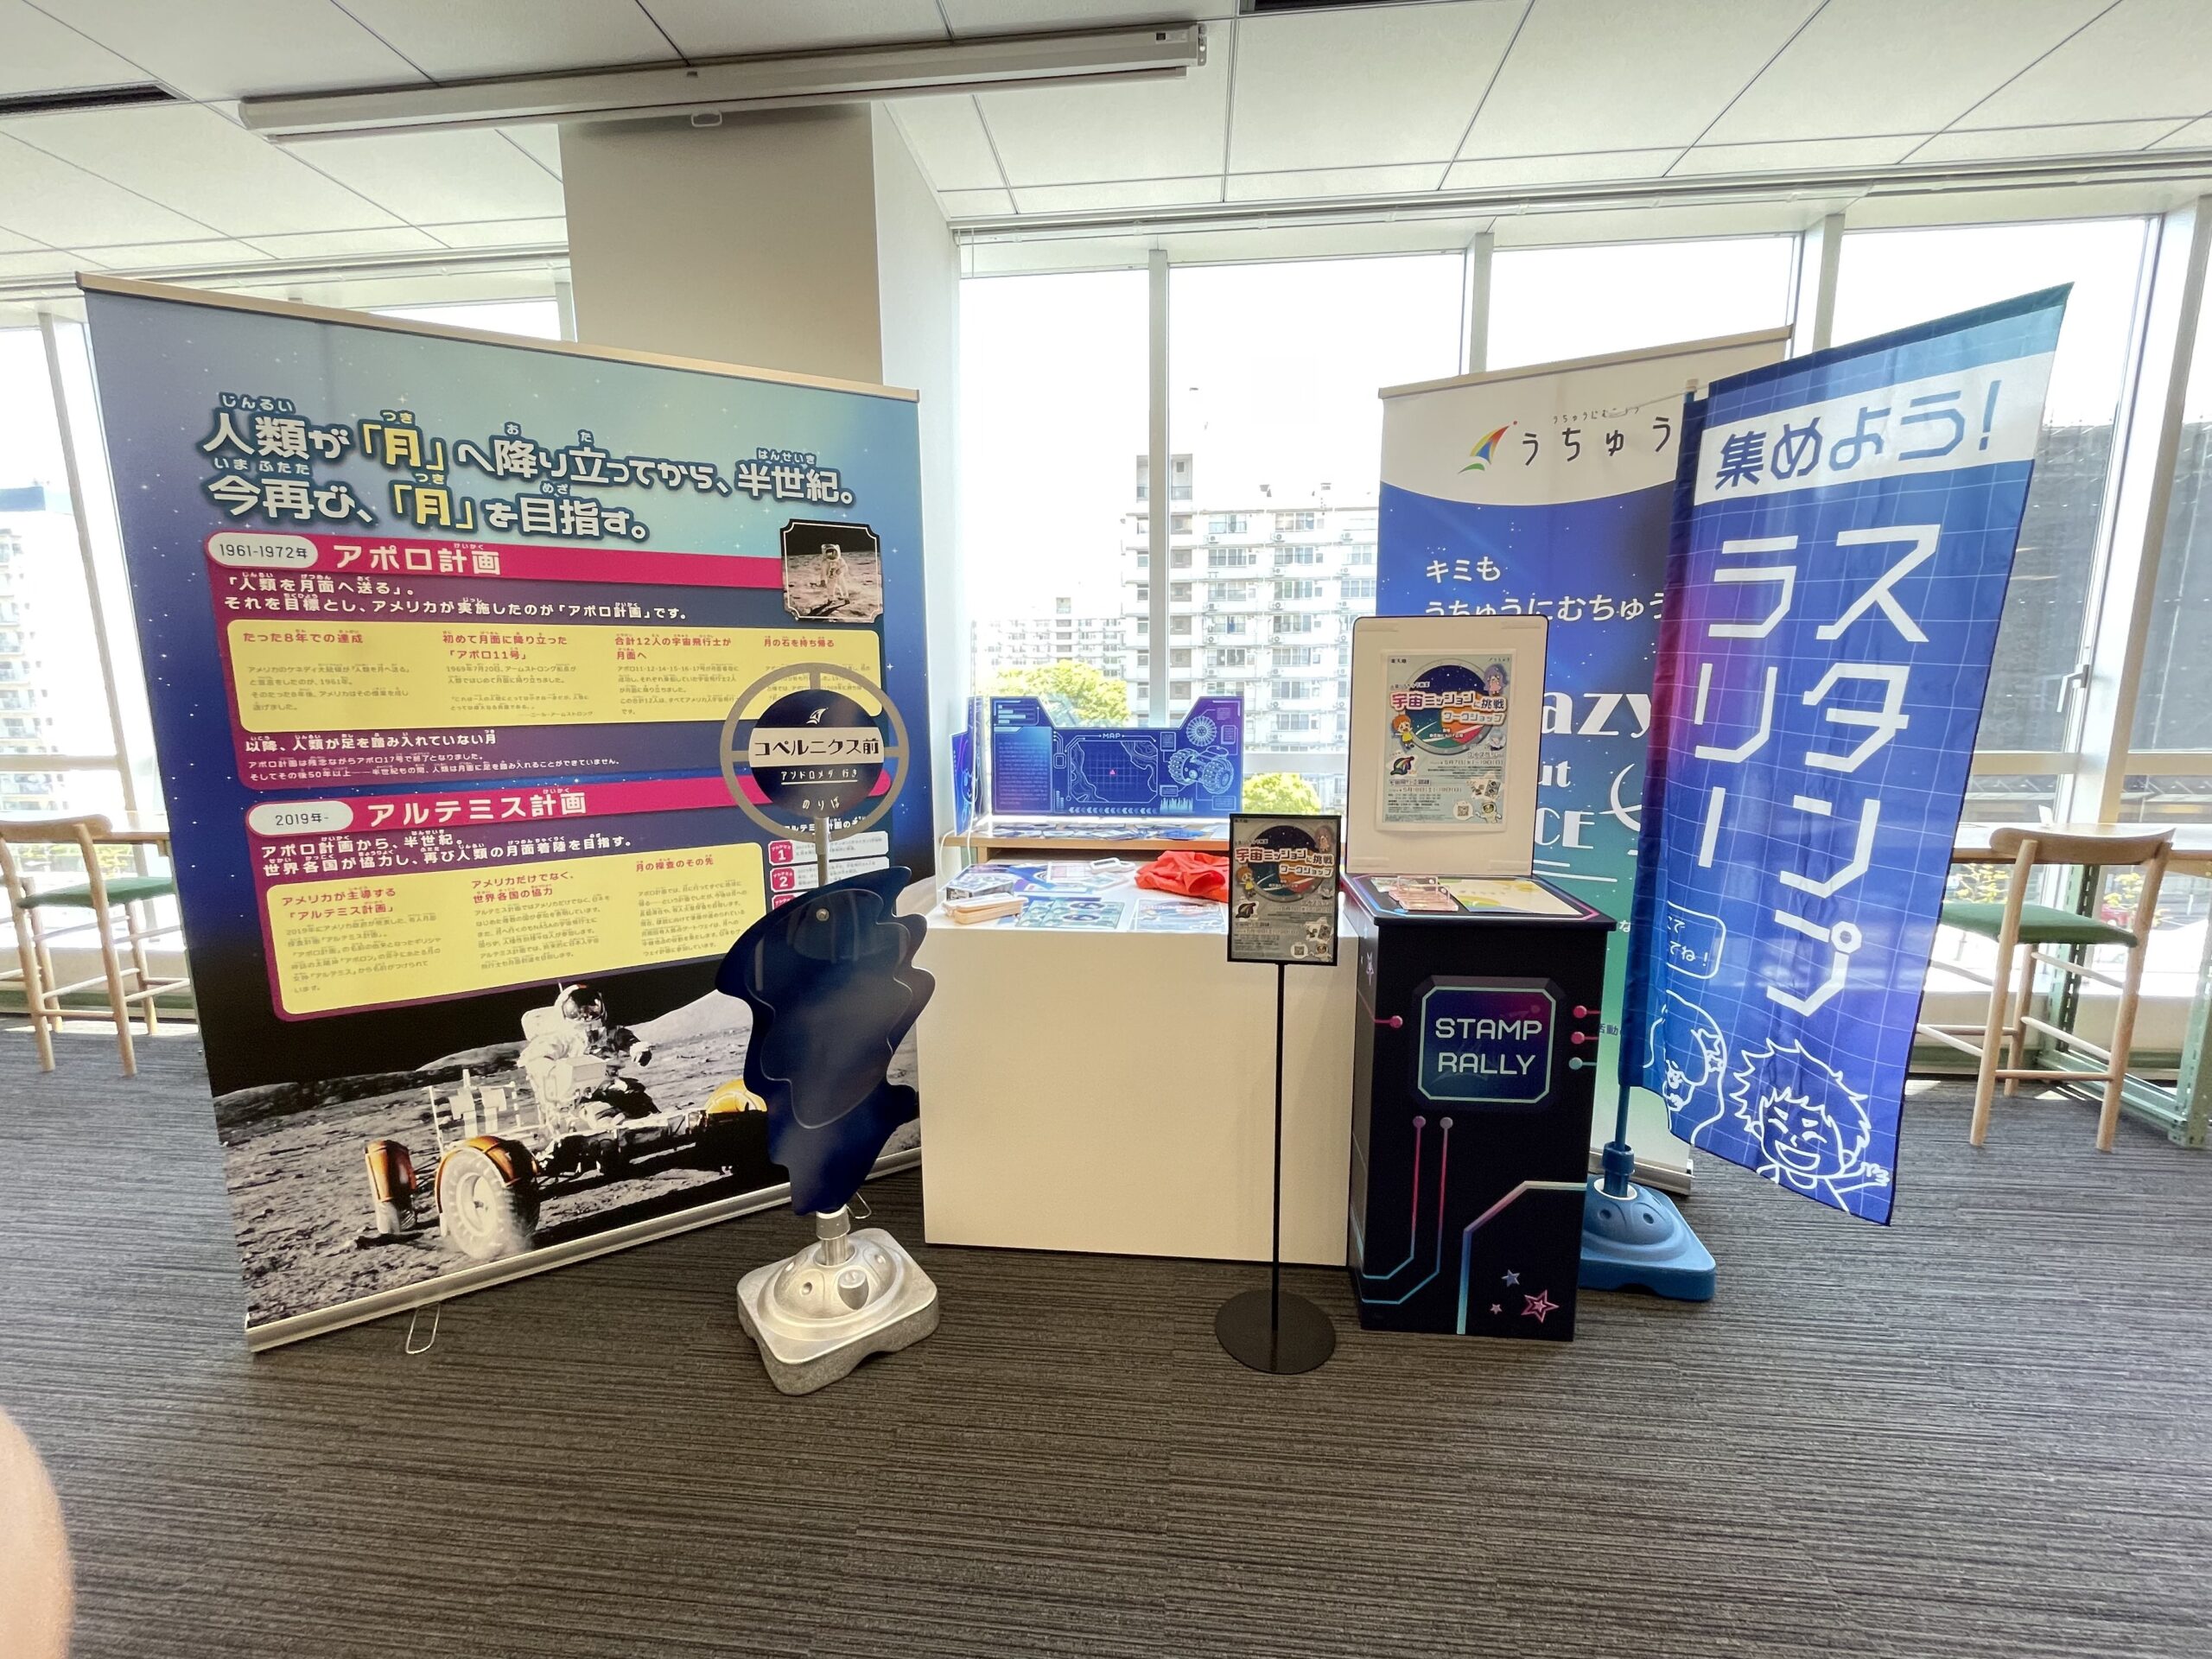 墨田区産業共創施設（Sumida Innovation Core）にて弊社の展示を開始いたしました